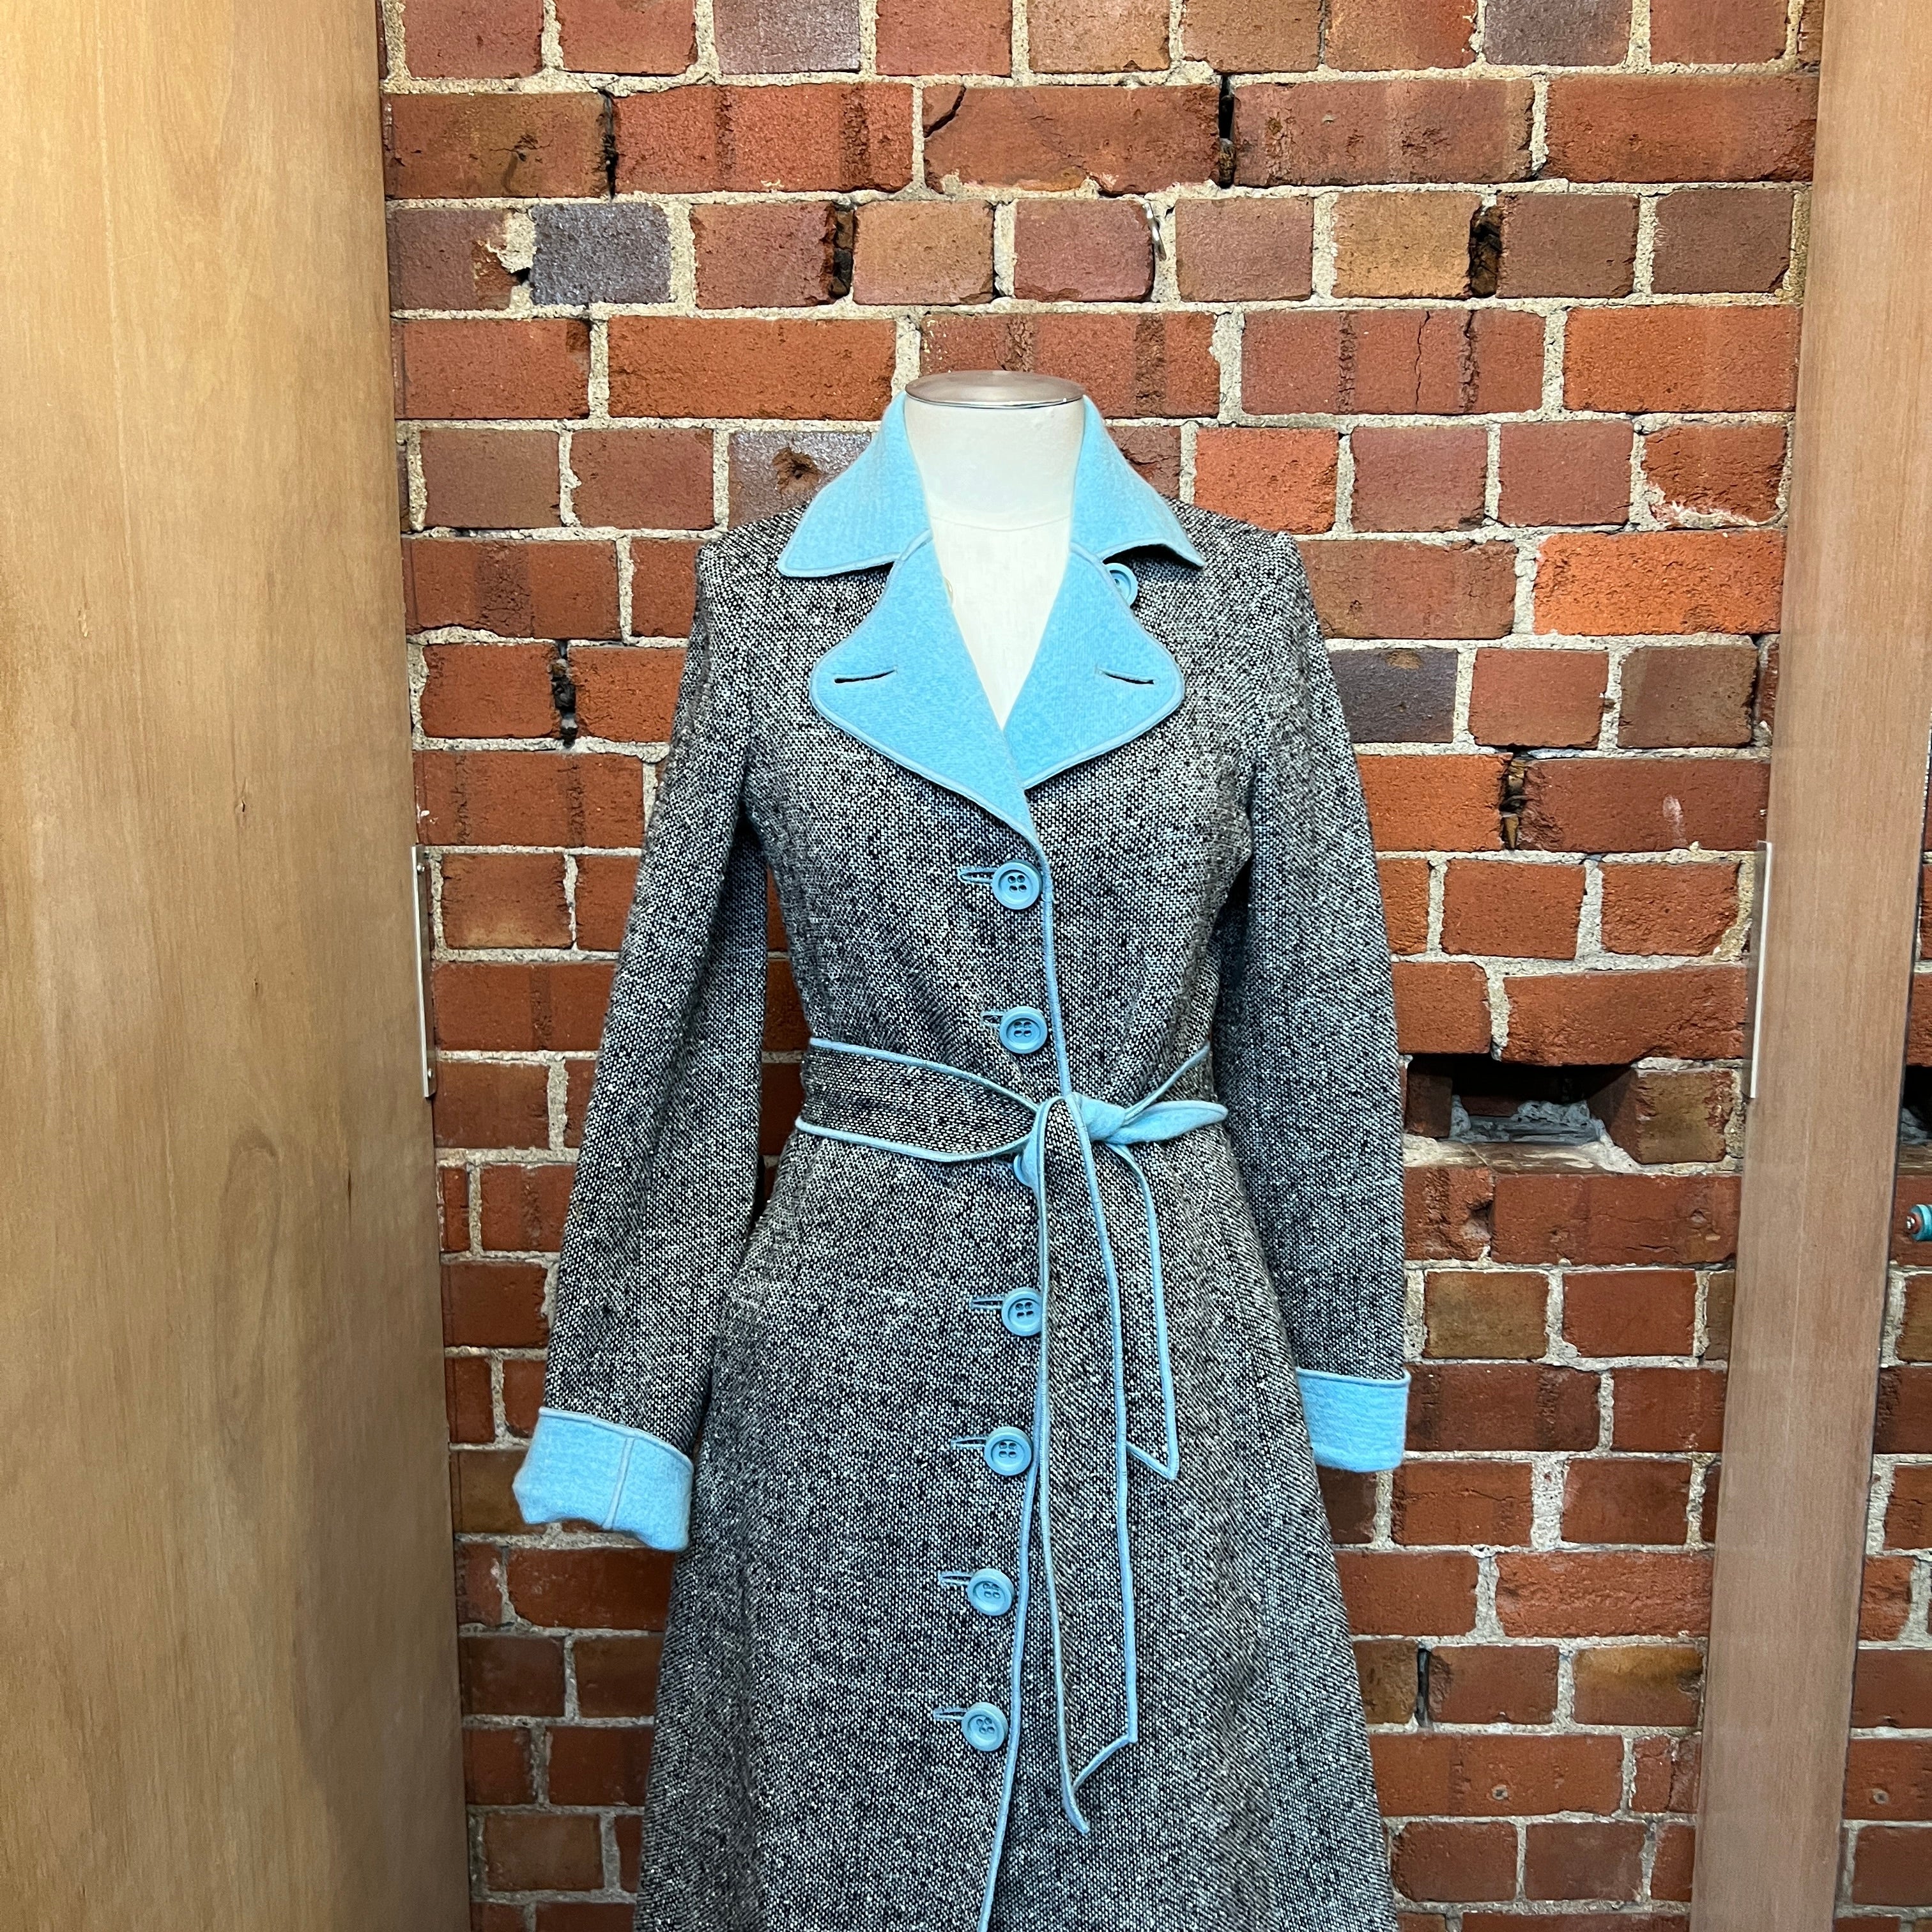 MOSCHINO pure wool coat and skirt set!